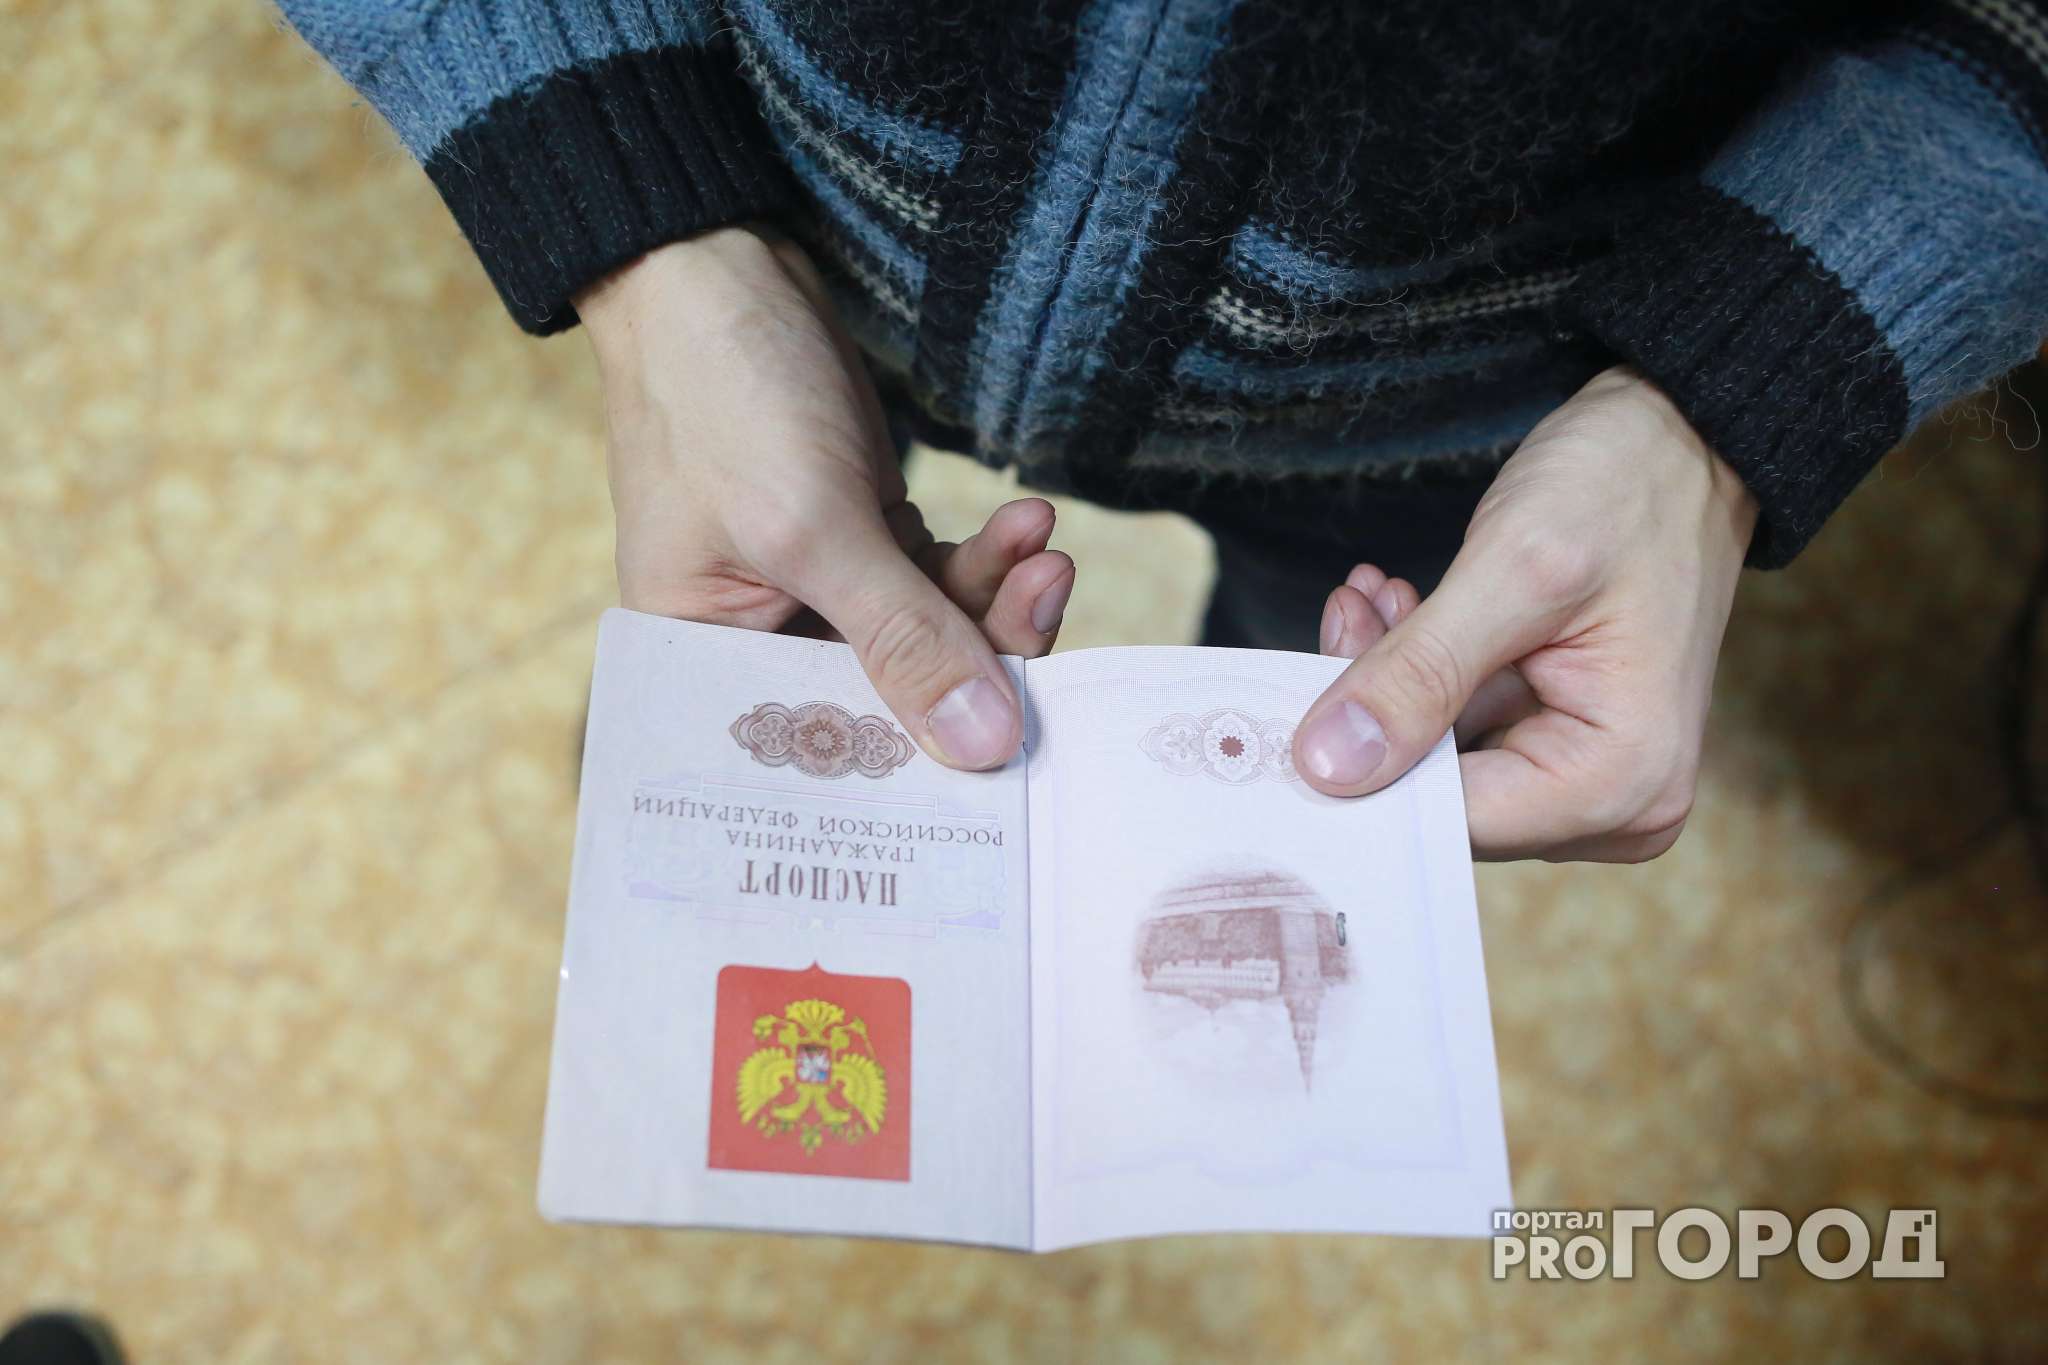 В Кировской области вынесли приговор парню, который вырвал страницу паспорта